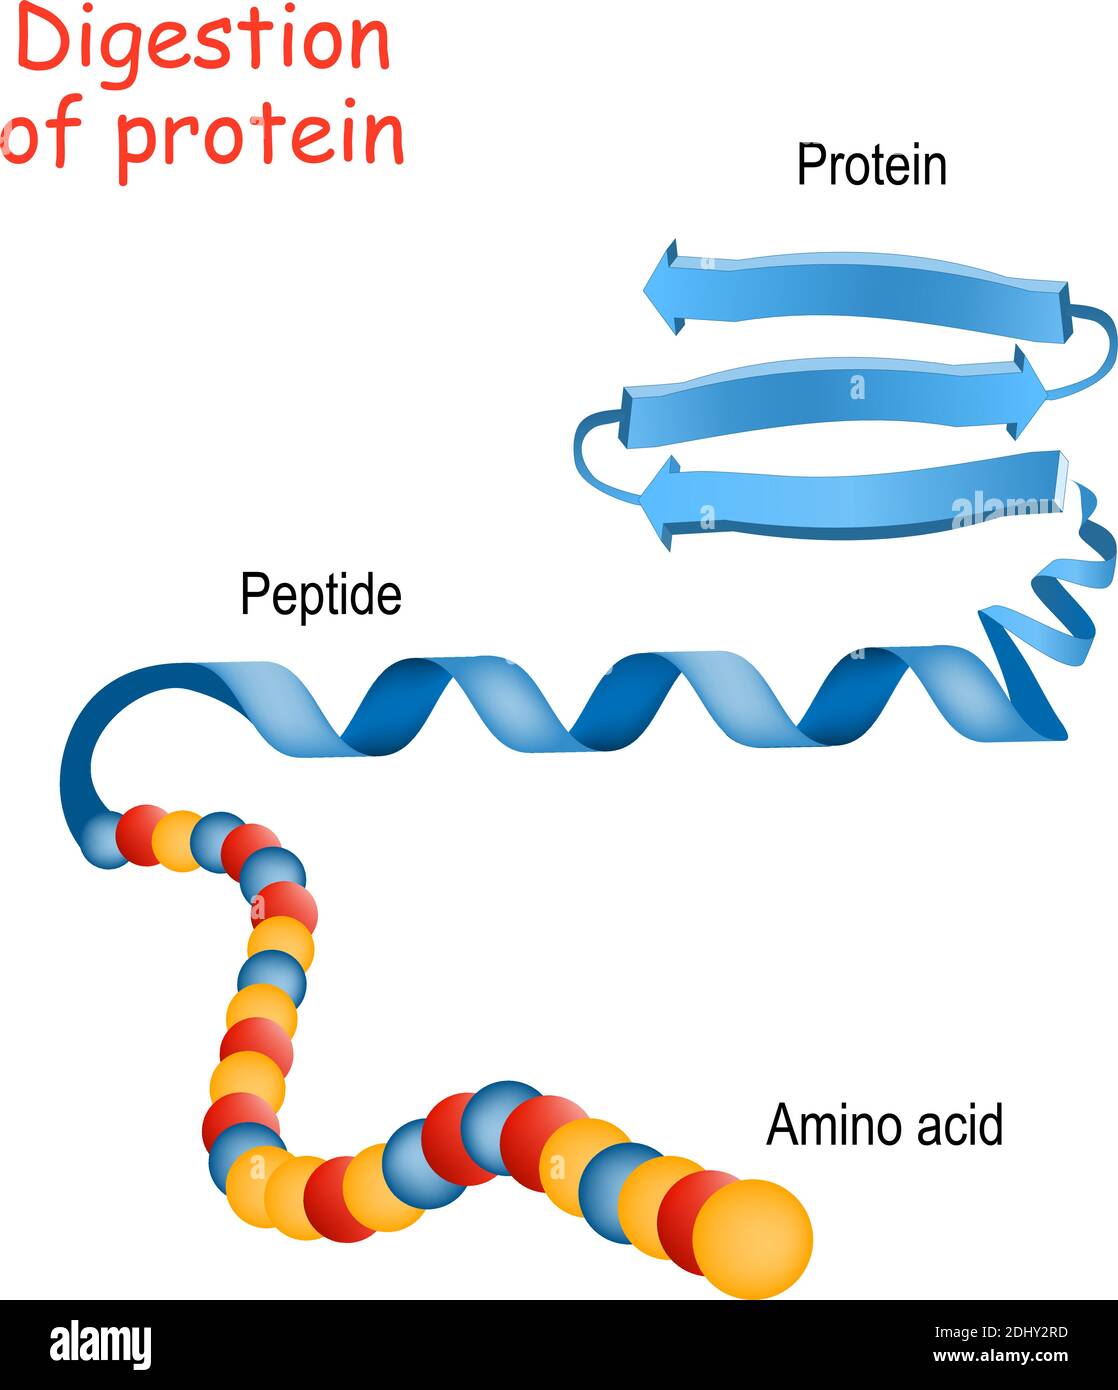 Struttura di proteina da amminoacido a peptide, e proteina. Primo piano della molecola proteica. Illustrazione vettoriale per medicina, biologia, scienza Illustrazione Vettoriale